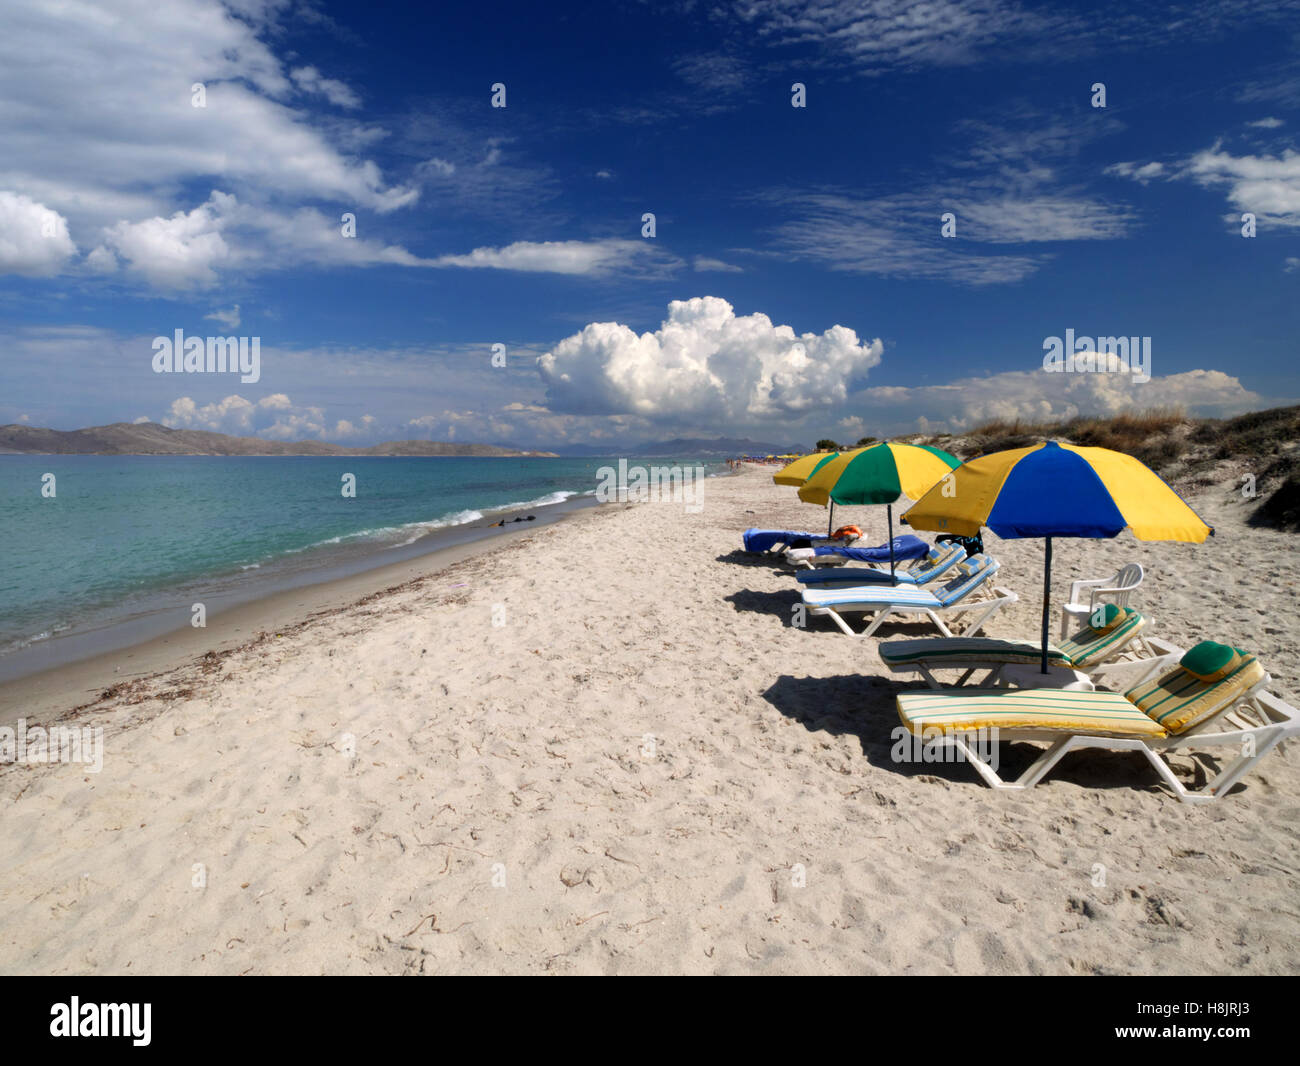 Limnara beach, Marmari, Kos, Greece.  Views across the Aegean to Pserimos. Stock Photo